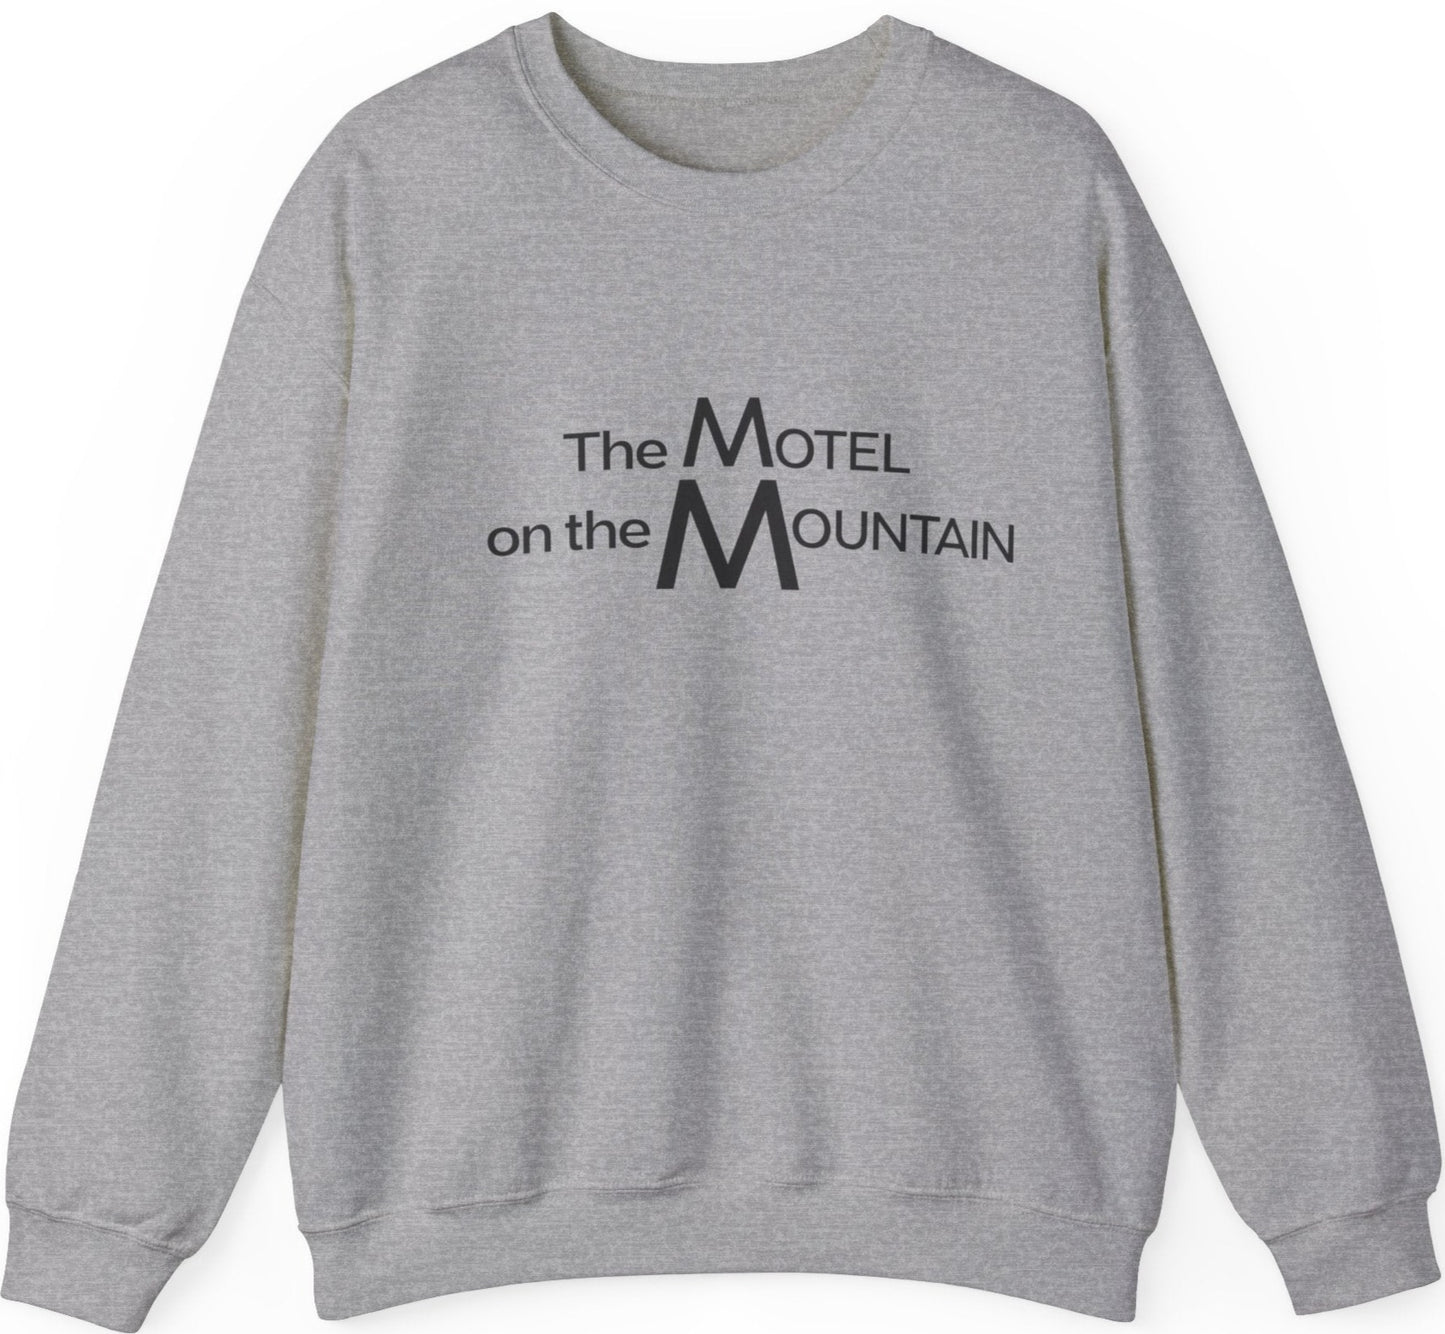 Motel on the Mountain sweatshirt